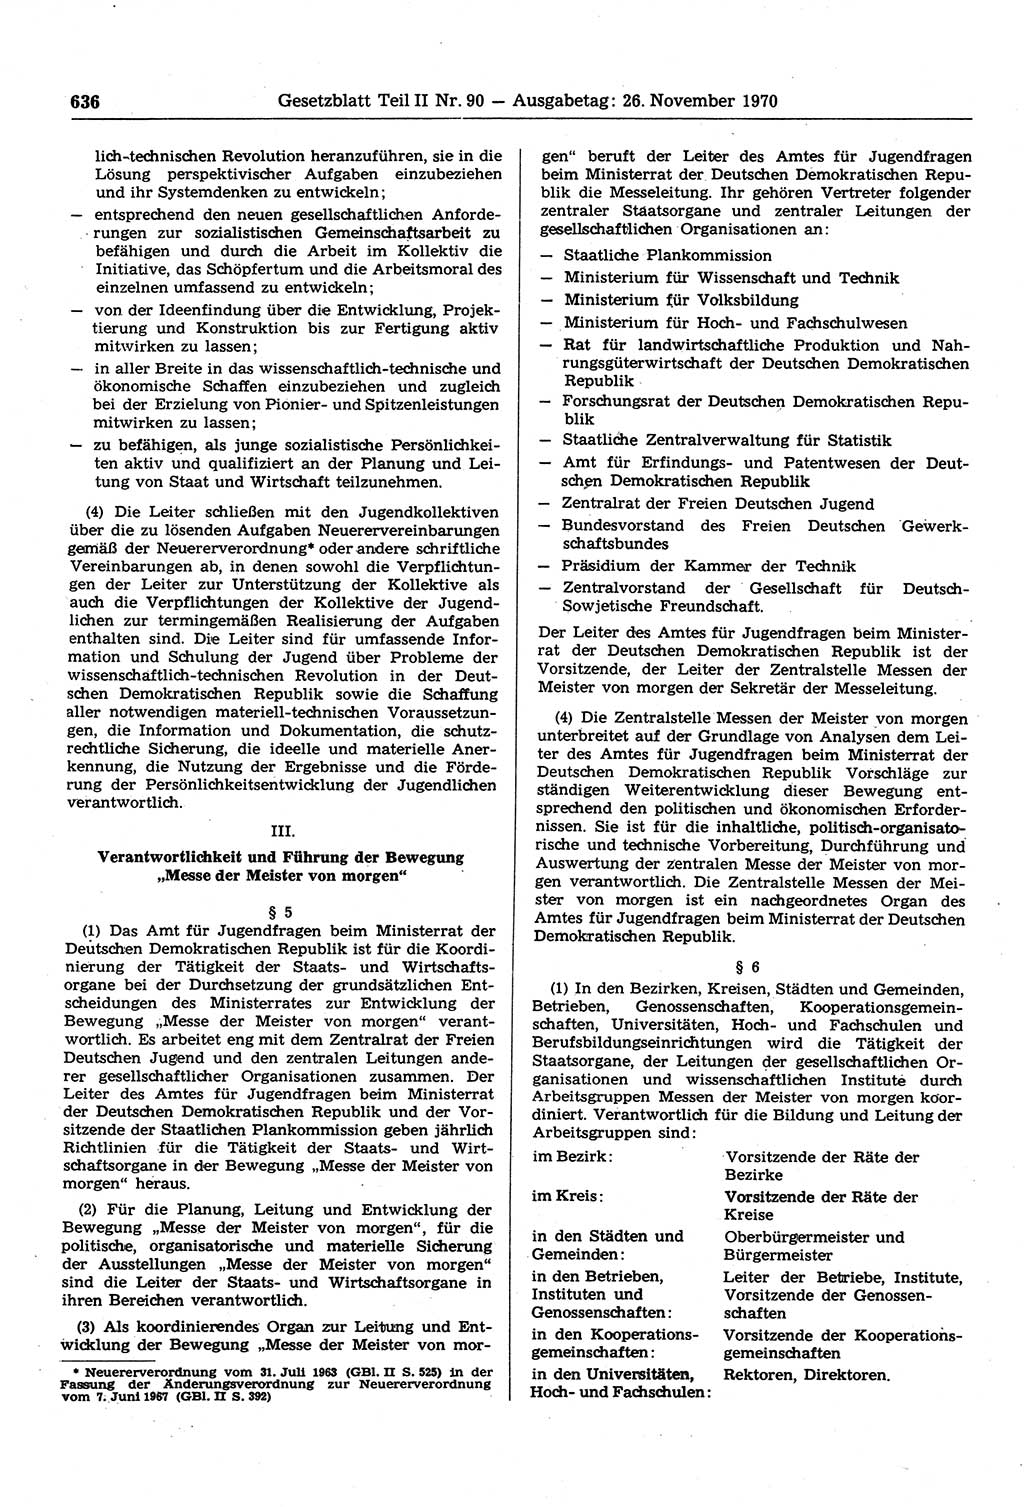 Gesetzblatt (GBl.) der Deutschen Demokratischen Republik (DDR) Teil ⅠⅠ 1970, Seite 636 (GBl. DDR ⅠⅠ 1970, S. 636)